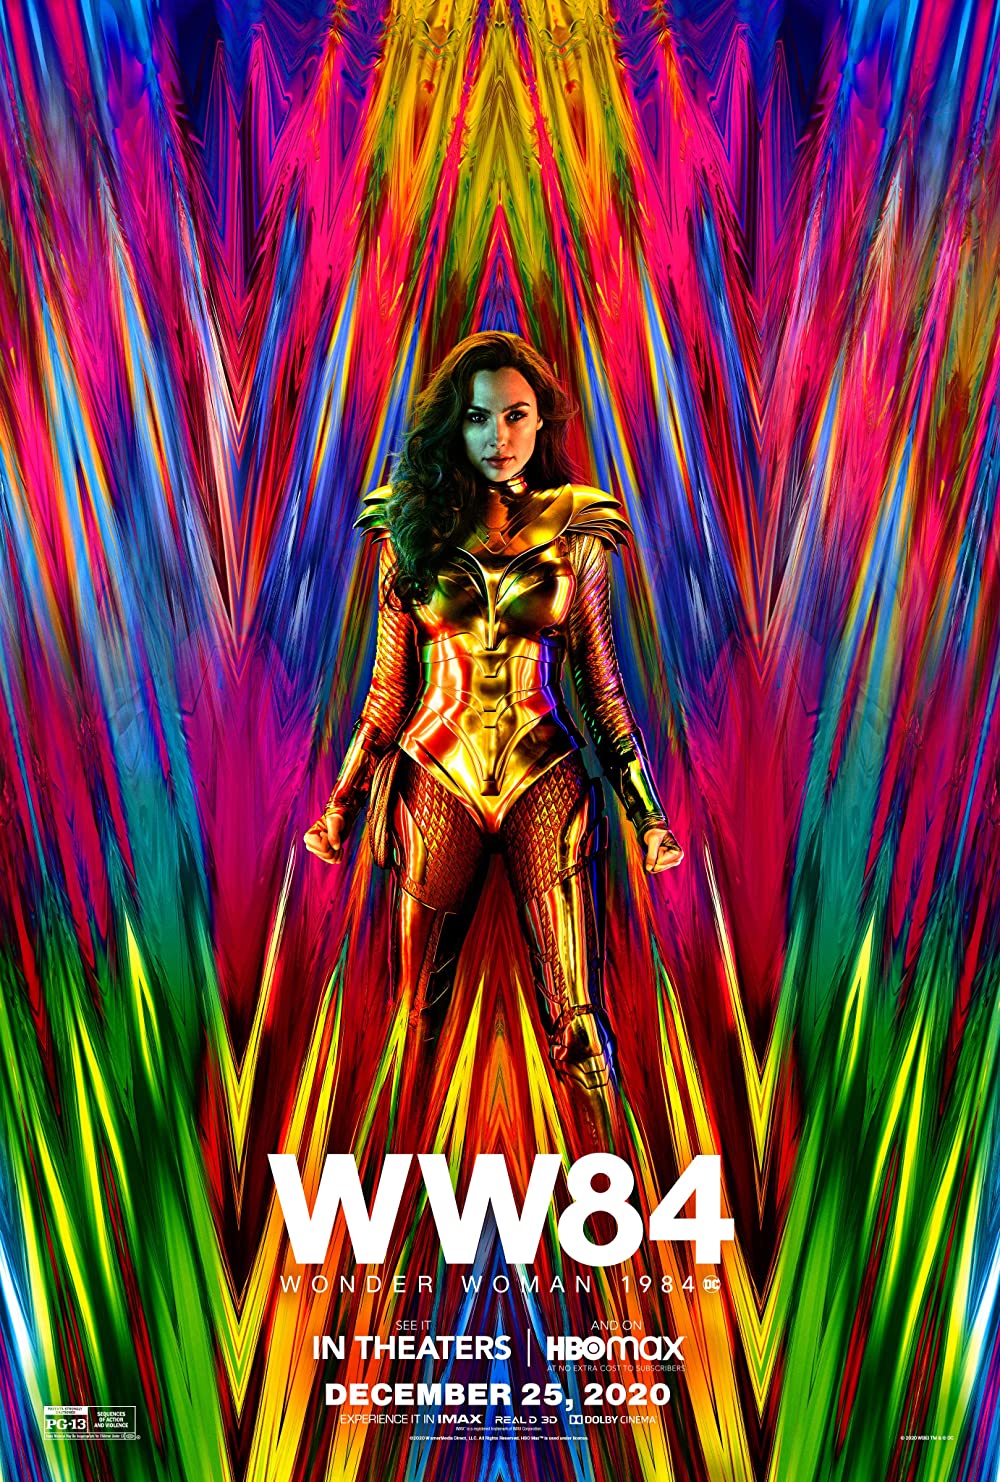 Filmbeschreibung zu Wonder Woman 1984